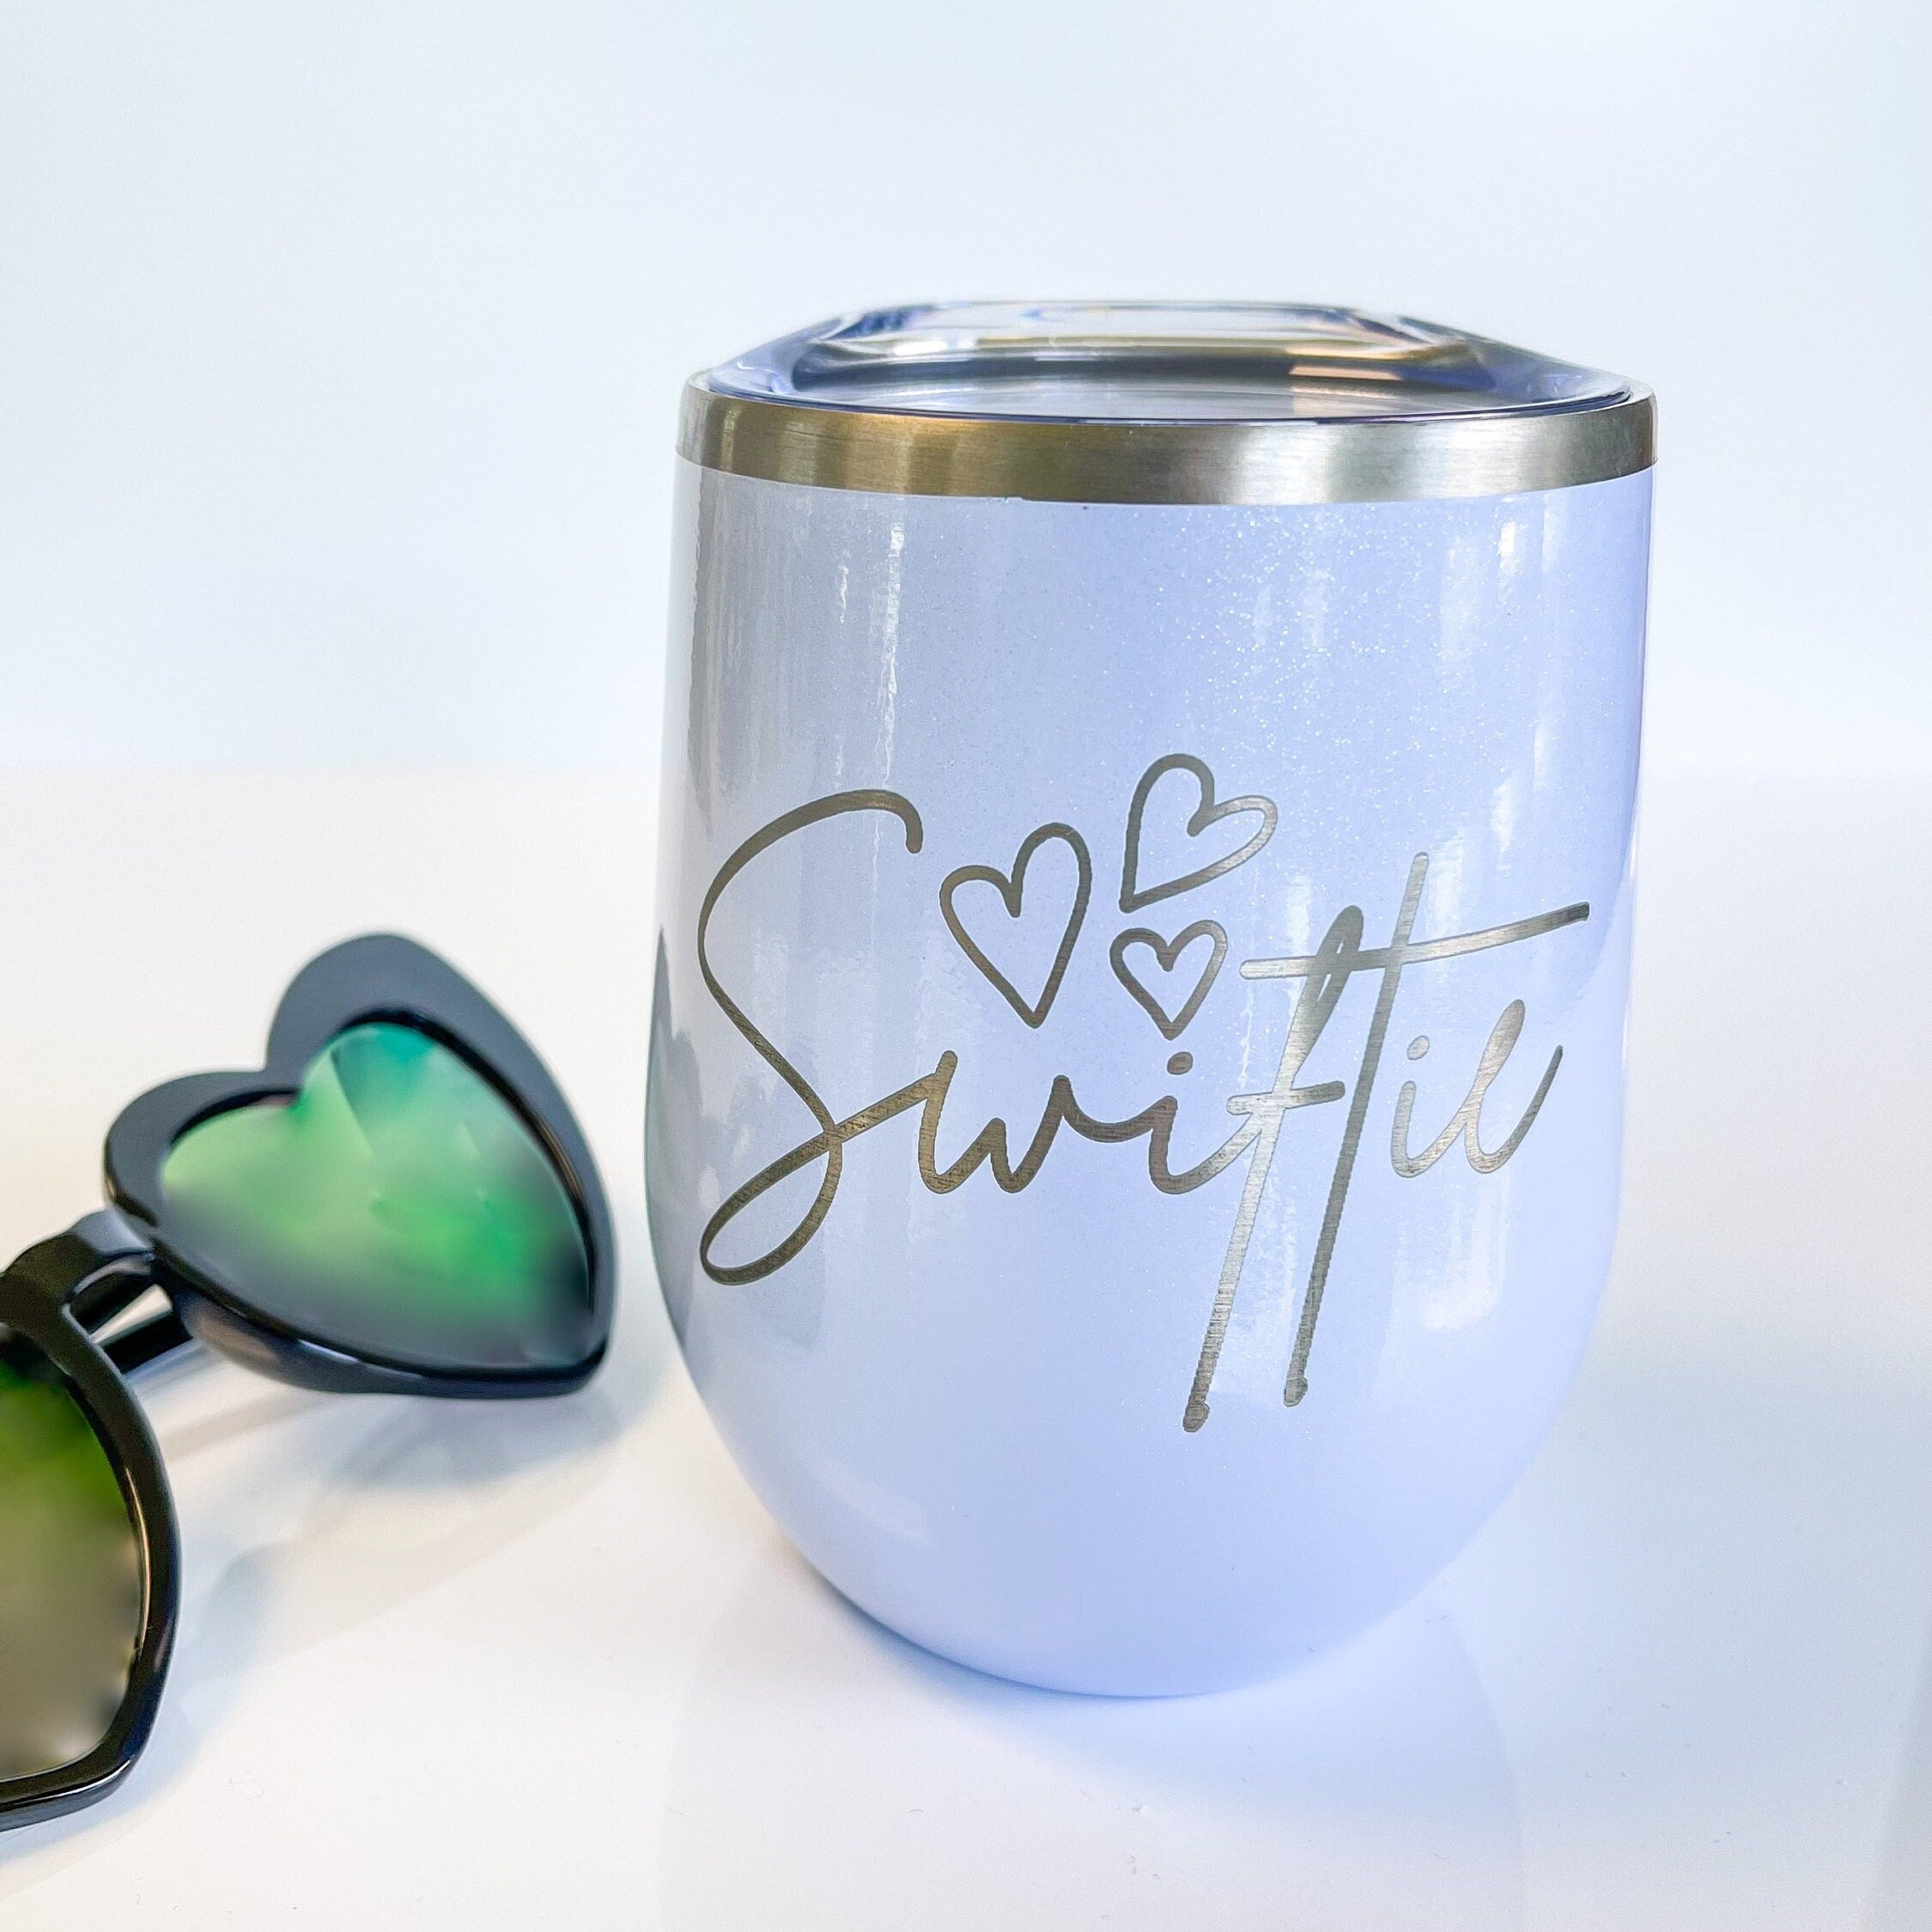 Swiftie taylors Version Tumbler Taylor Inspired Tumbler, Swiftie Heart Wine  Glass, Swift Fan Gift, Swiftie Gift, Taylors Version Gift 